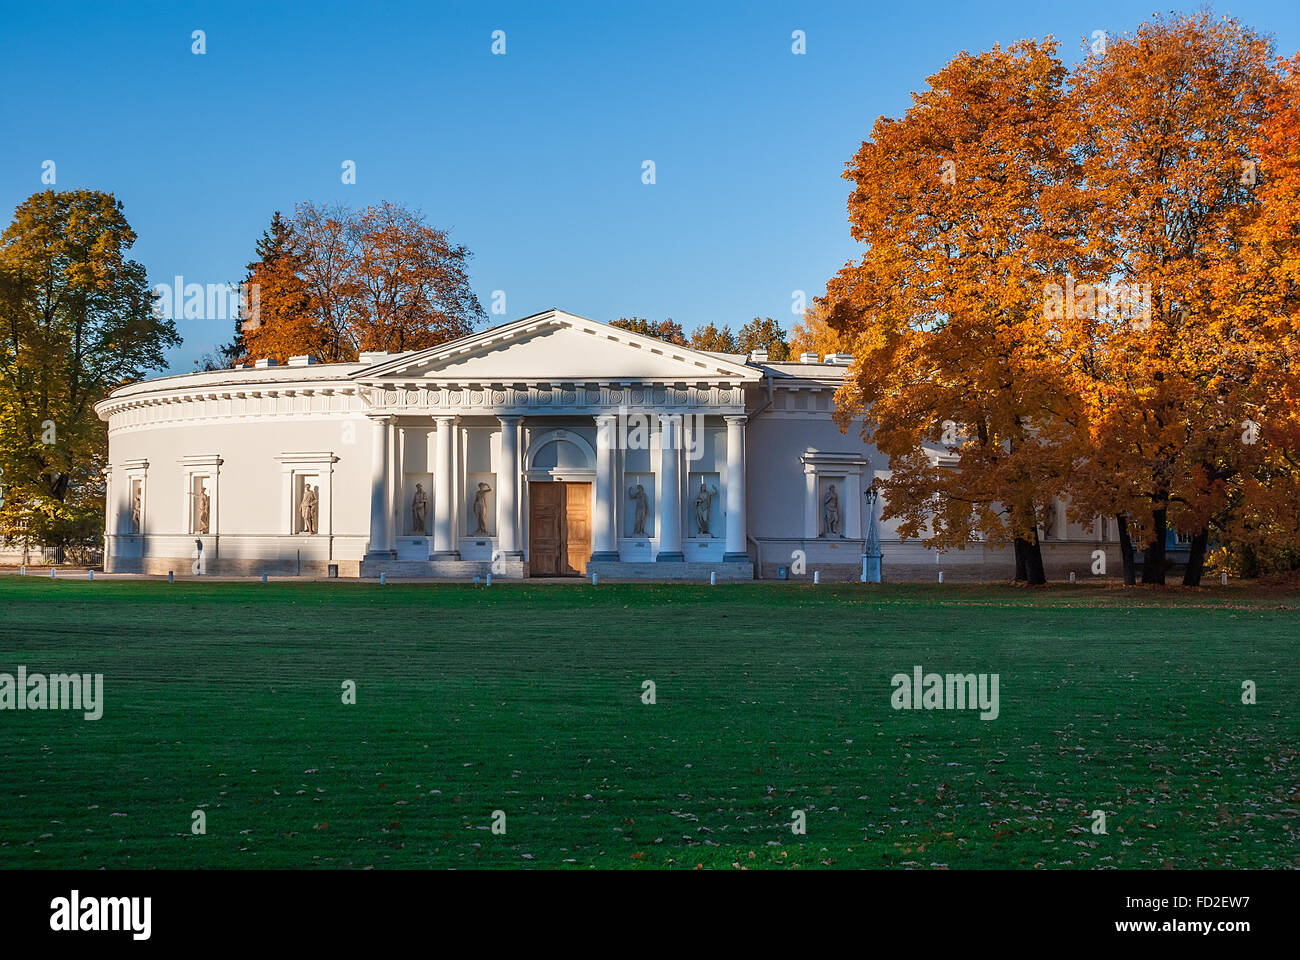 Vieux palais in autumn park Banque D'Images